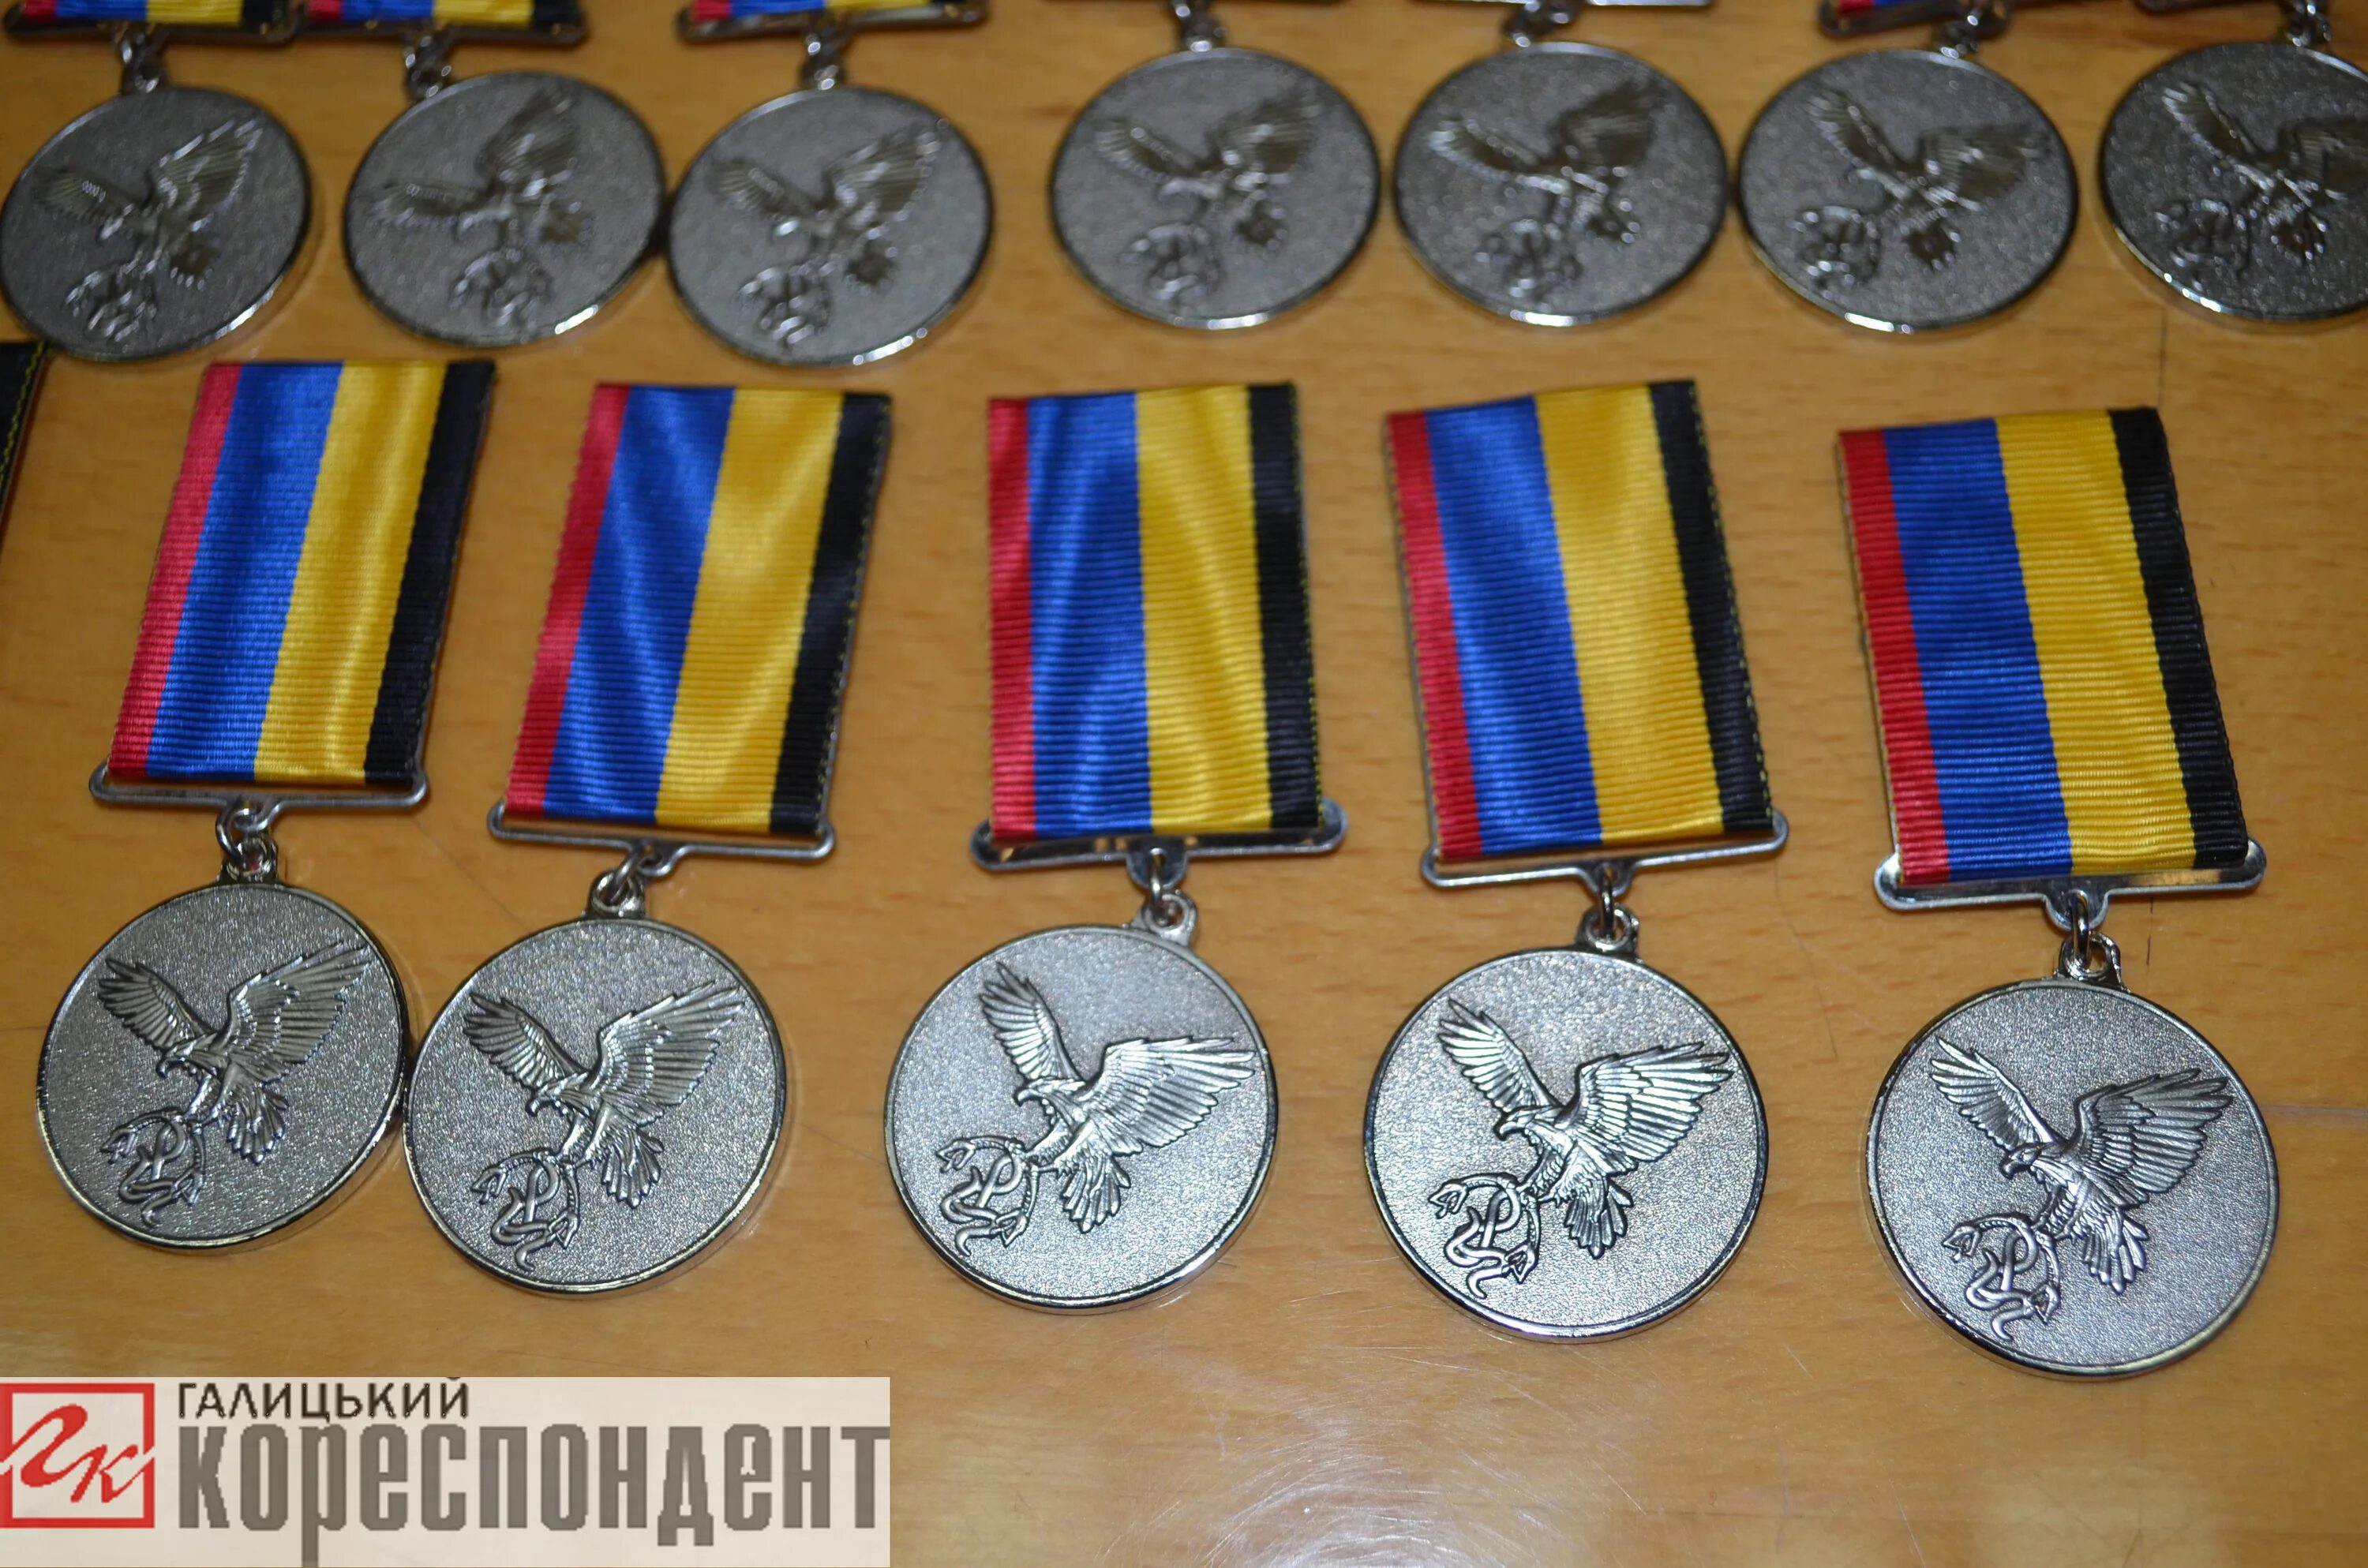 Какие медали украины. Медали ВСУ Украины. Награды Украины АТО. Боевые награды ВСУ Украины. Медали Украины нацистские.